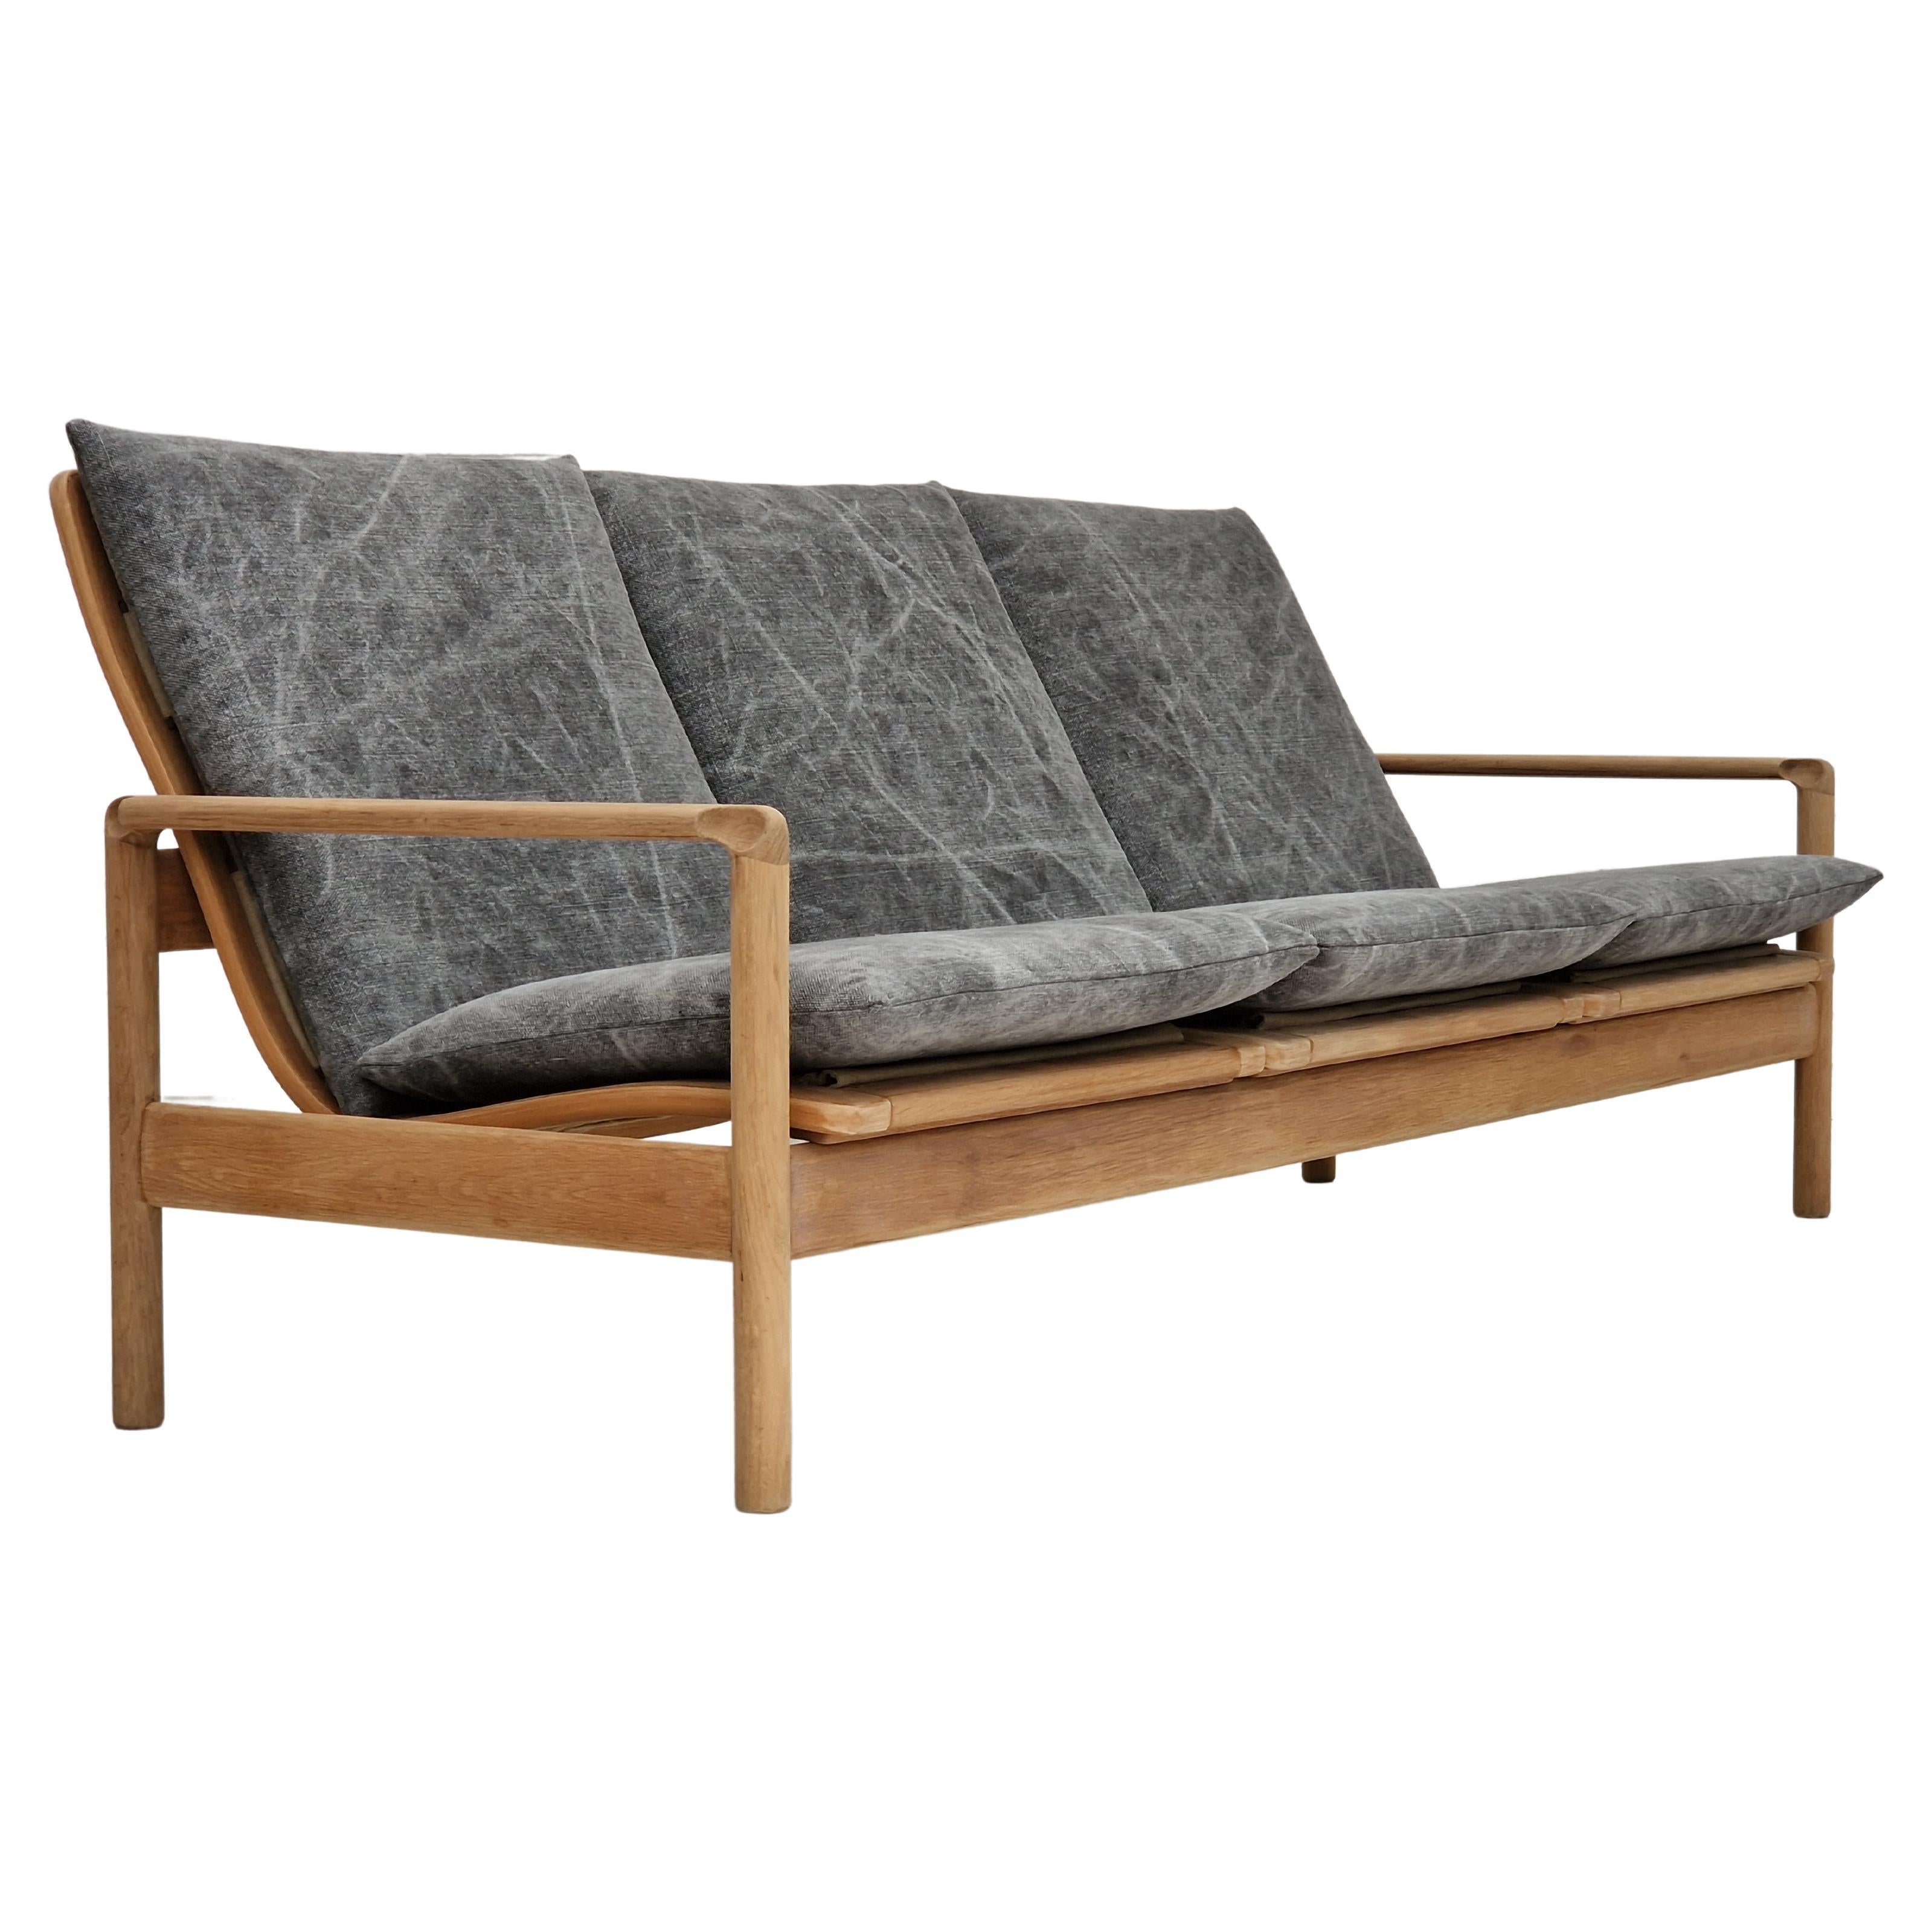 70er Jahre, dänisches Design, renoviertes 3-Sitzer-Sofa, Leinen-Möbelstoff, Eichenholz